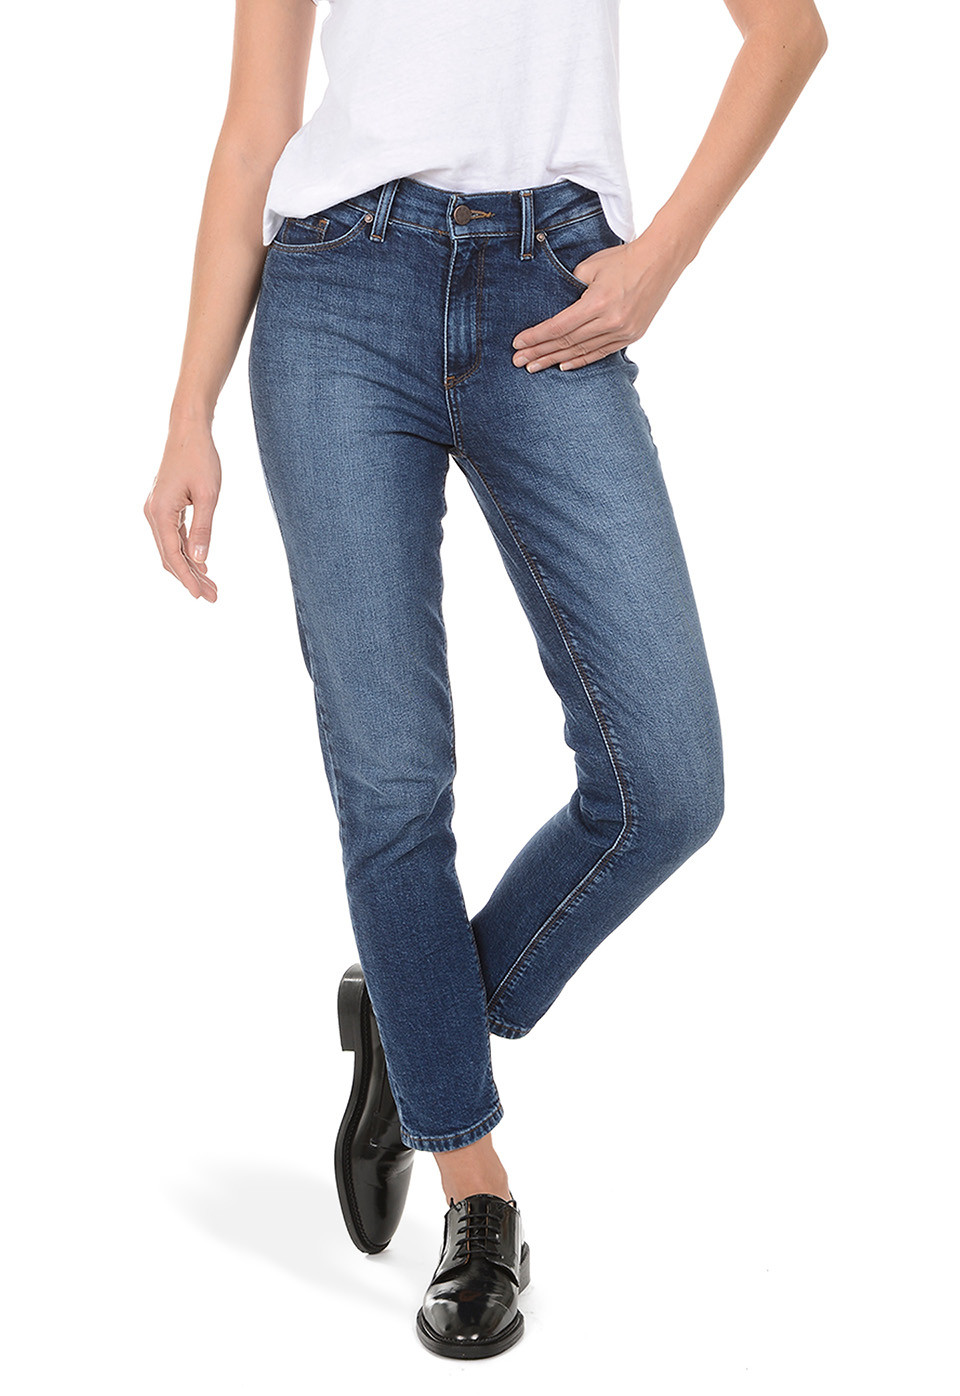 best lightweight jeans for summer